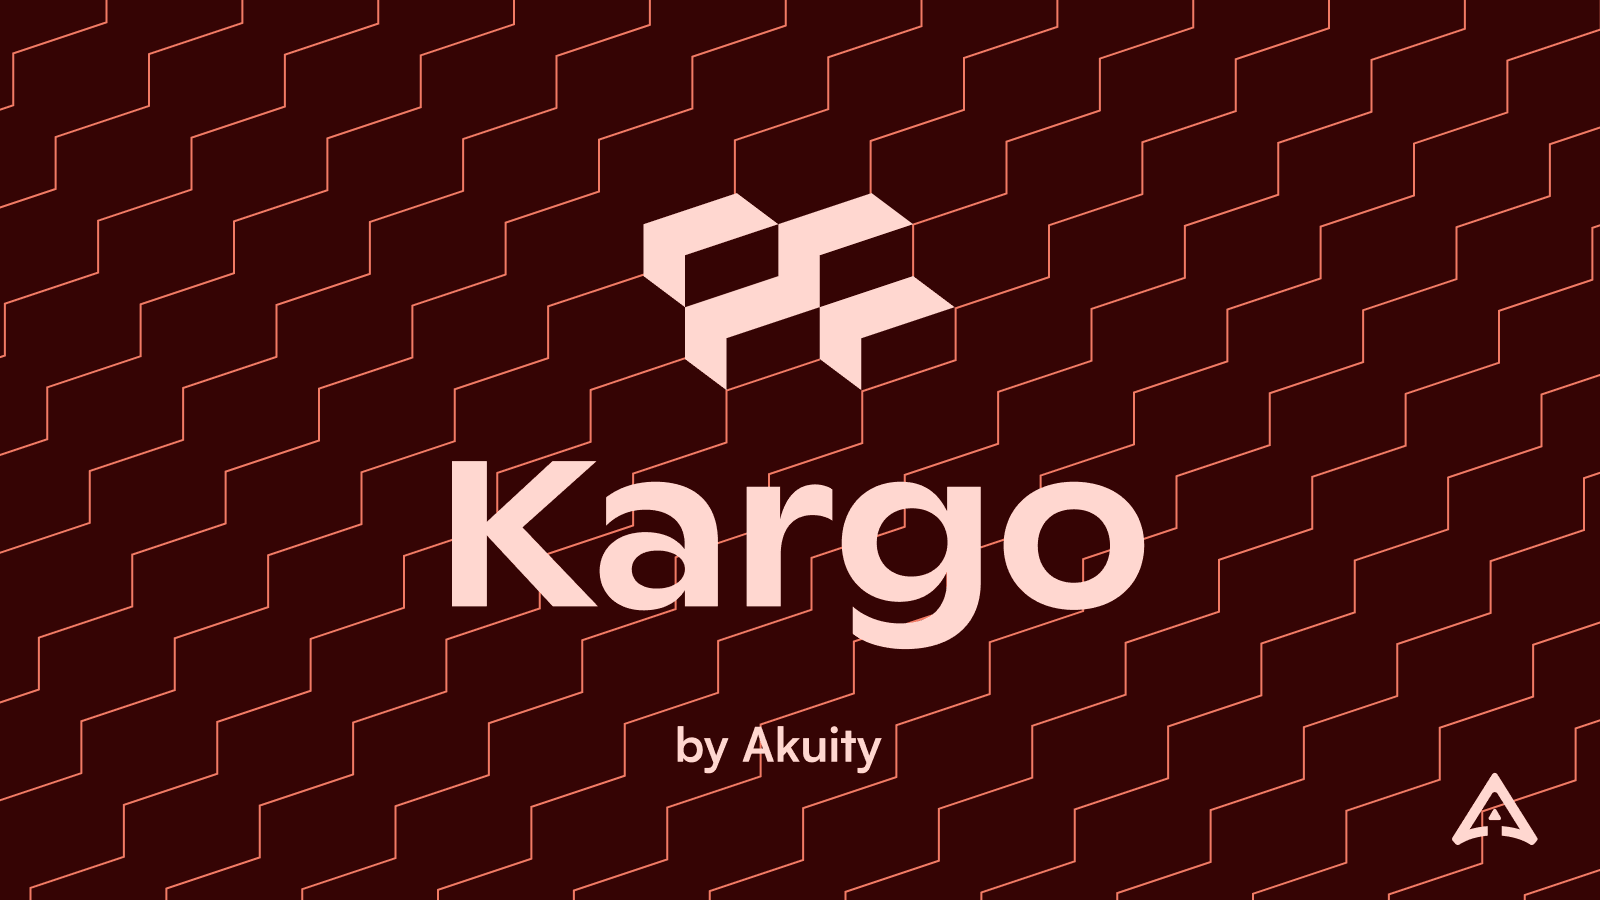 Introducing Kargo